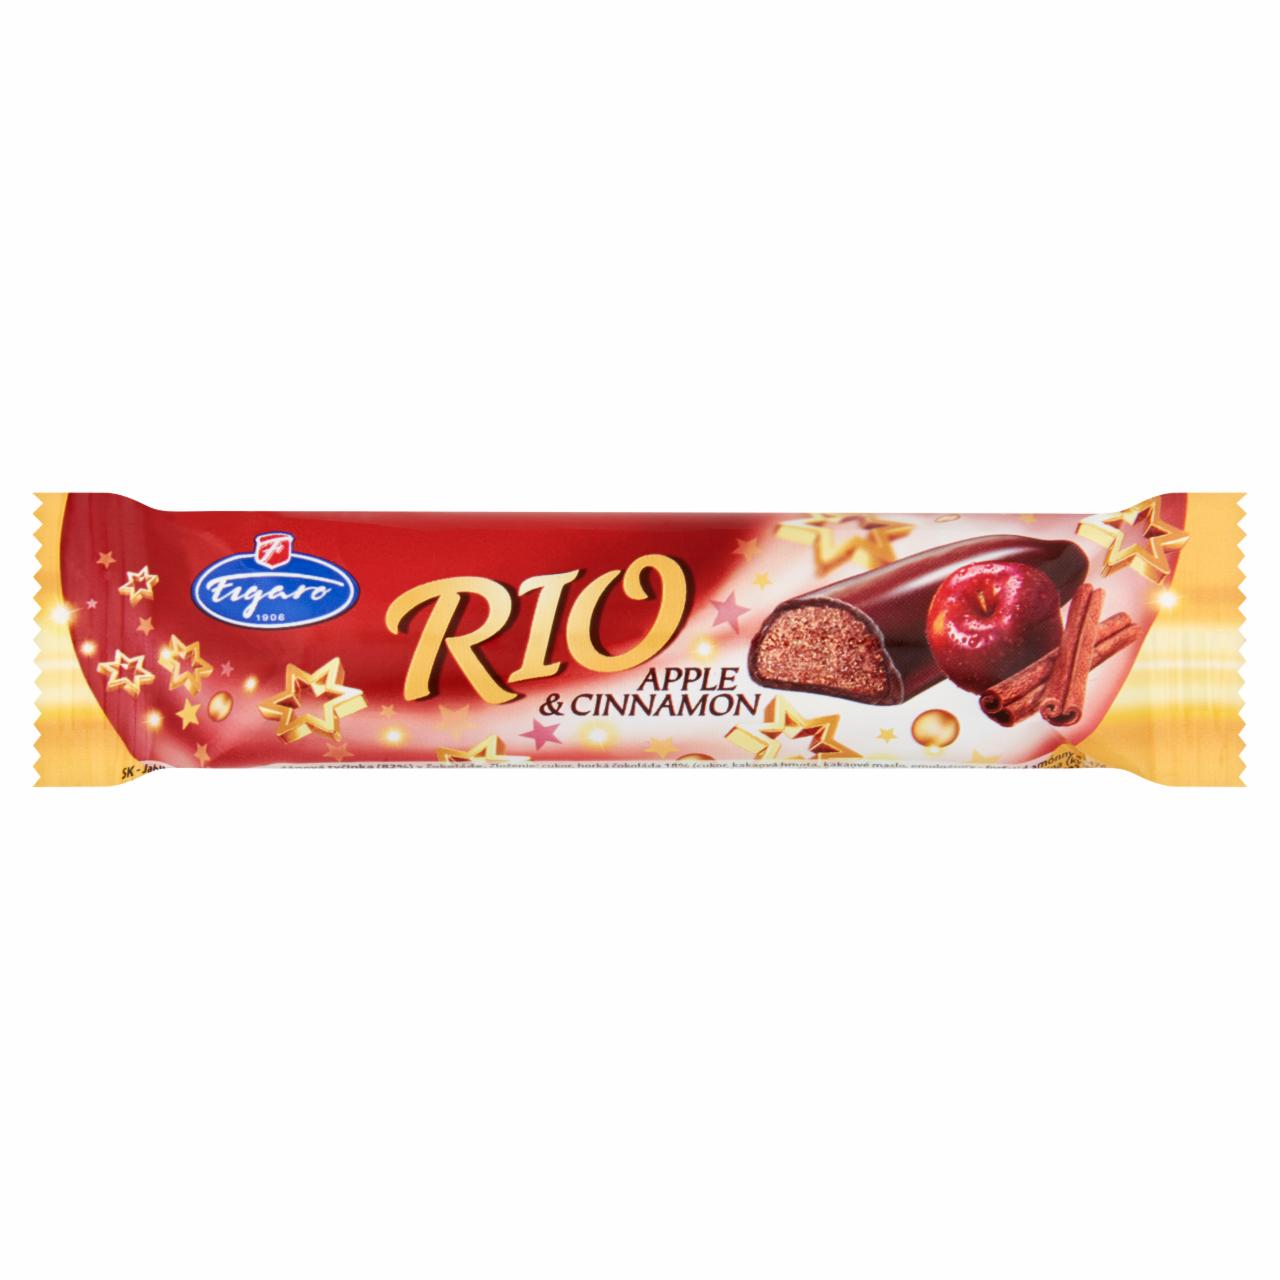 Képek - Rio csokoládéba mártott almás és fahéjas ízű fondánnal töltött szelet 25 g